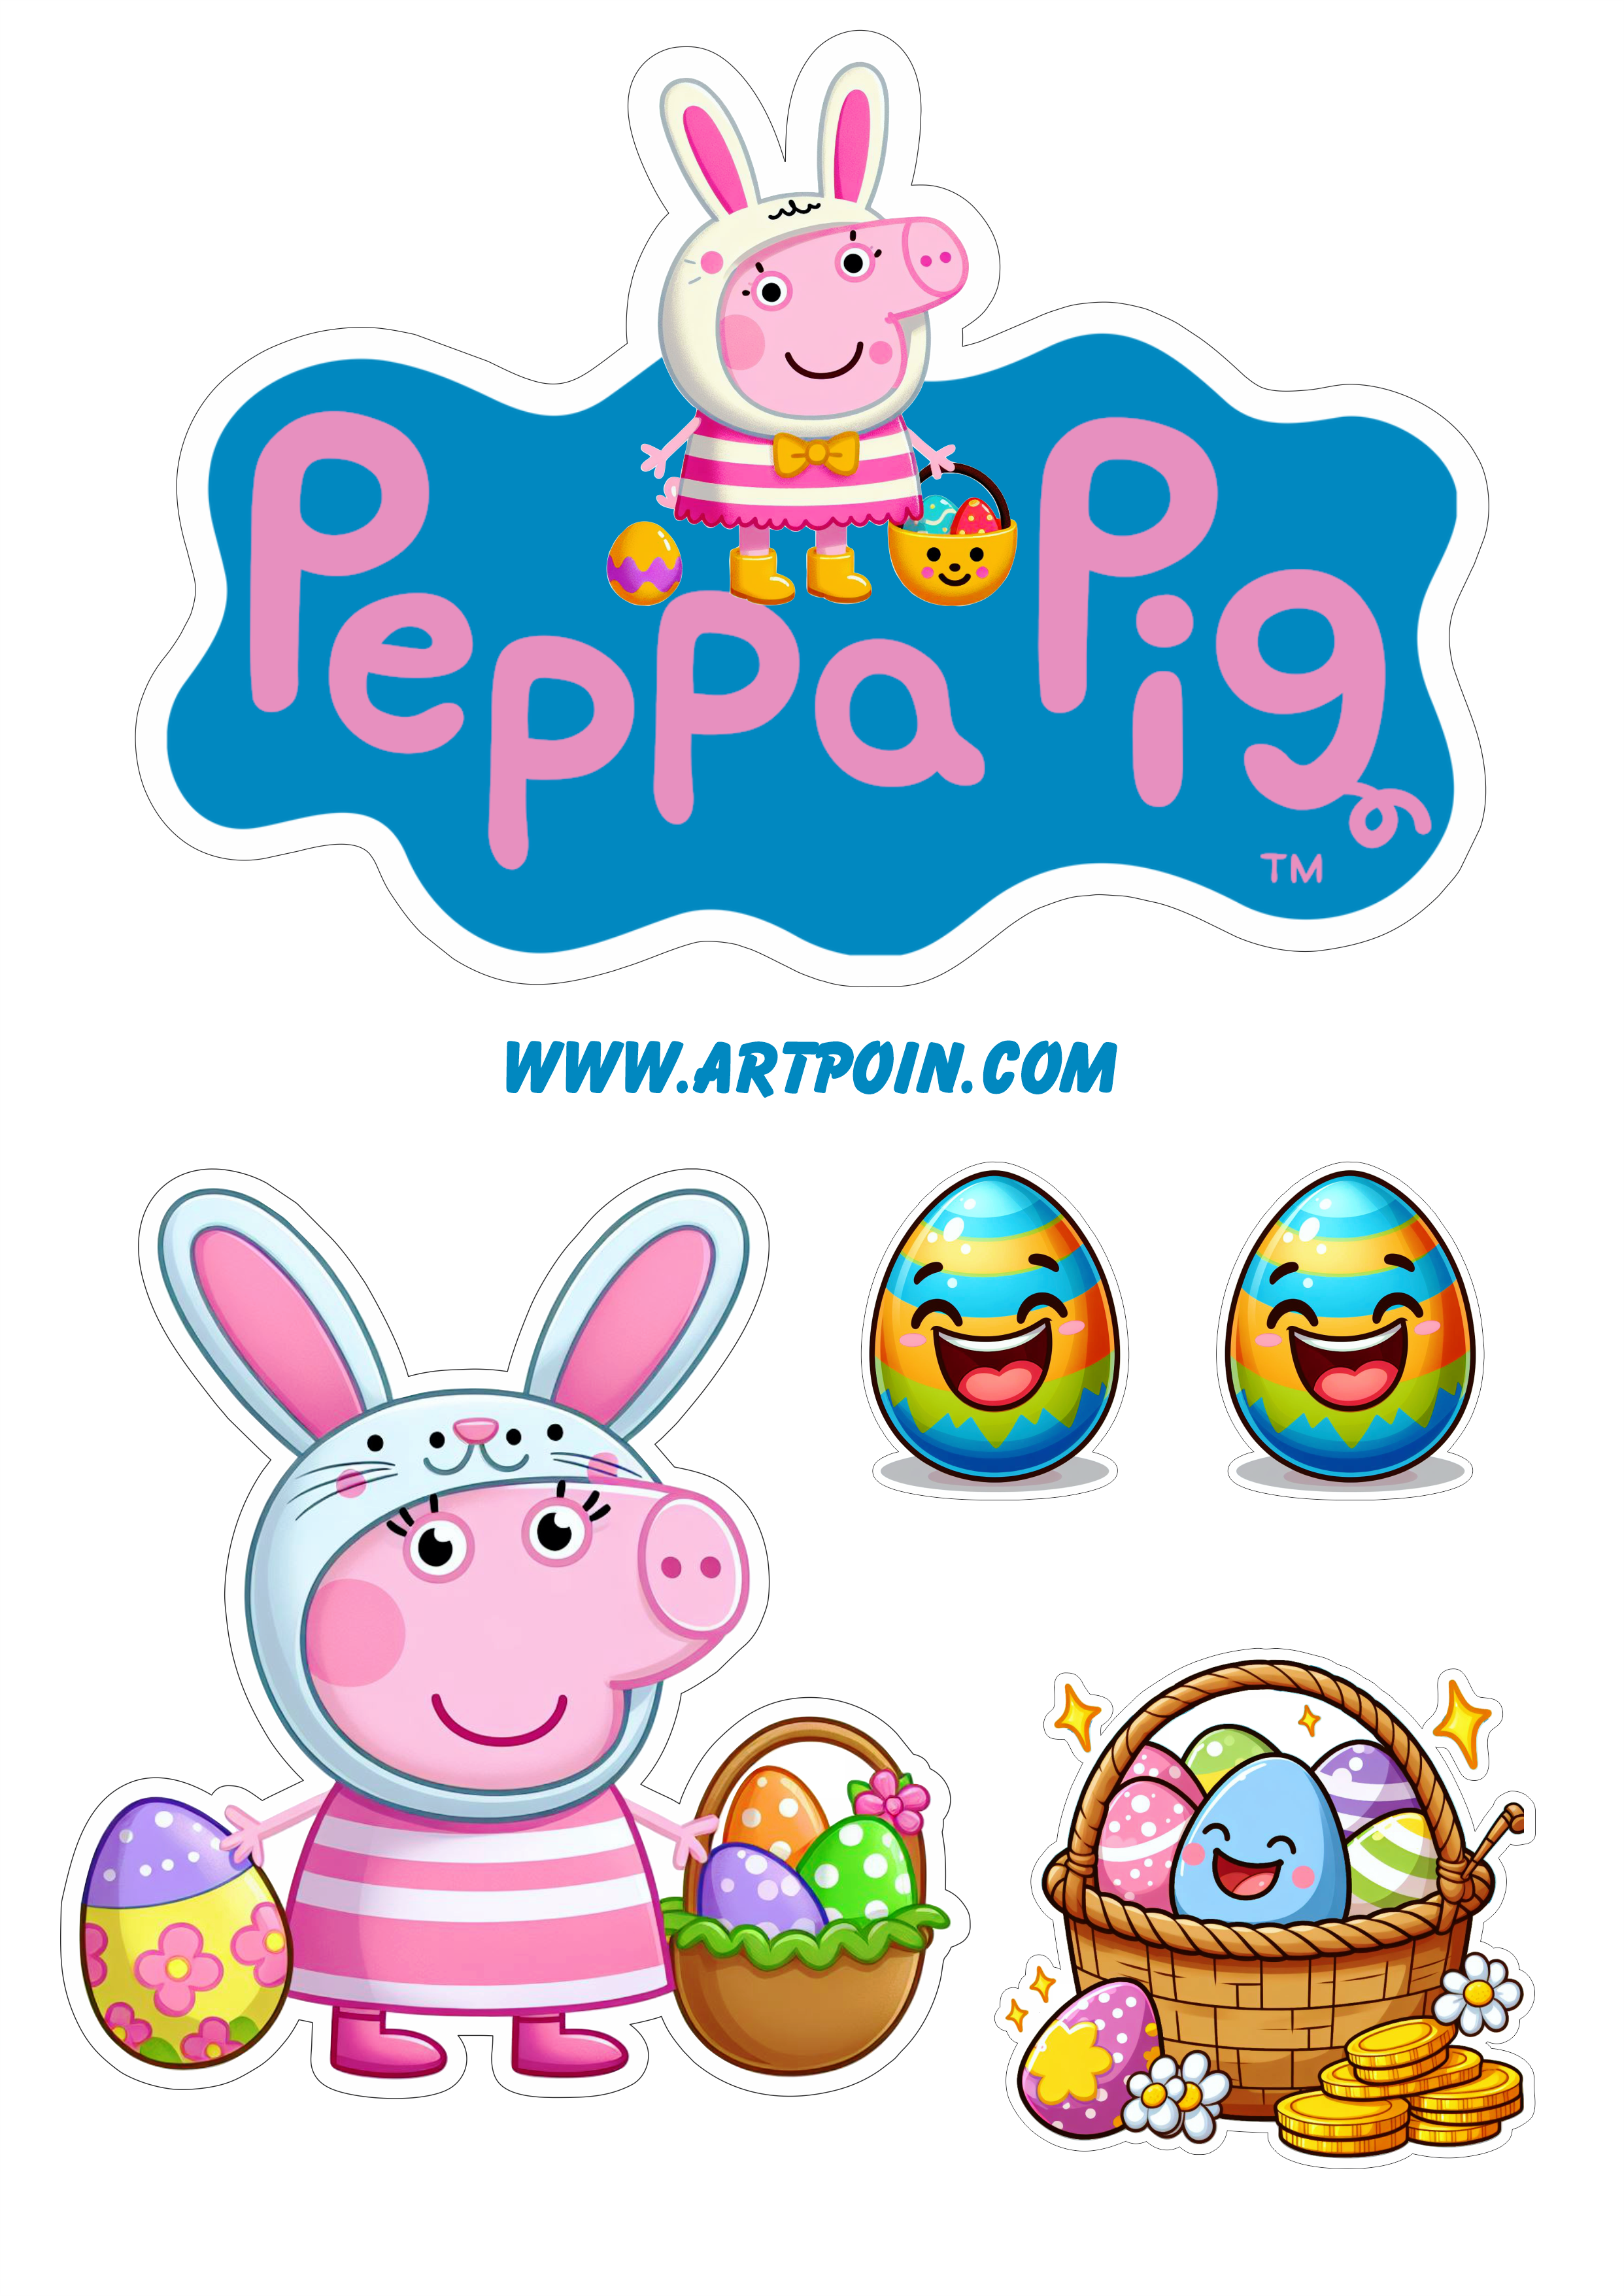 Topo de bolo para imprimir Peppa pig páscoa decoração de festa infantil fazendo a nossa festa png pack de imagens